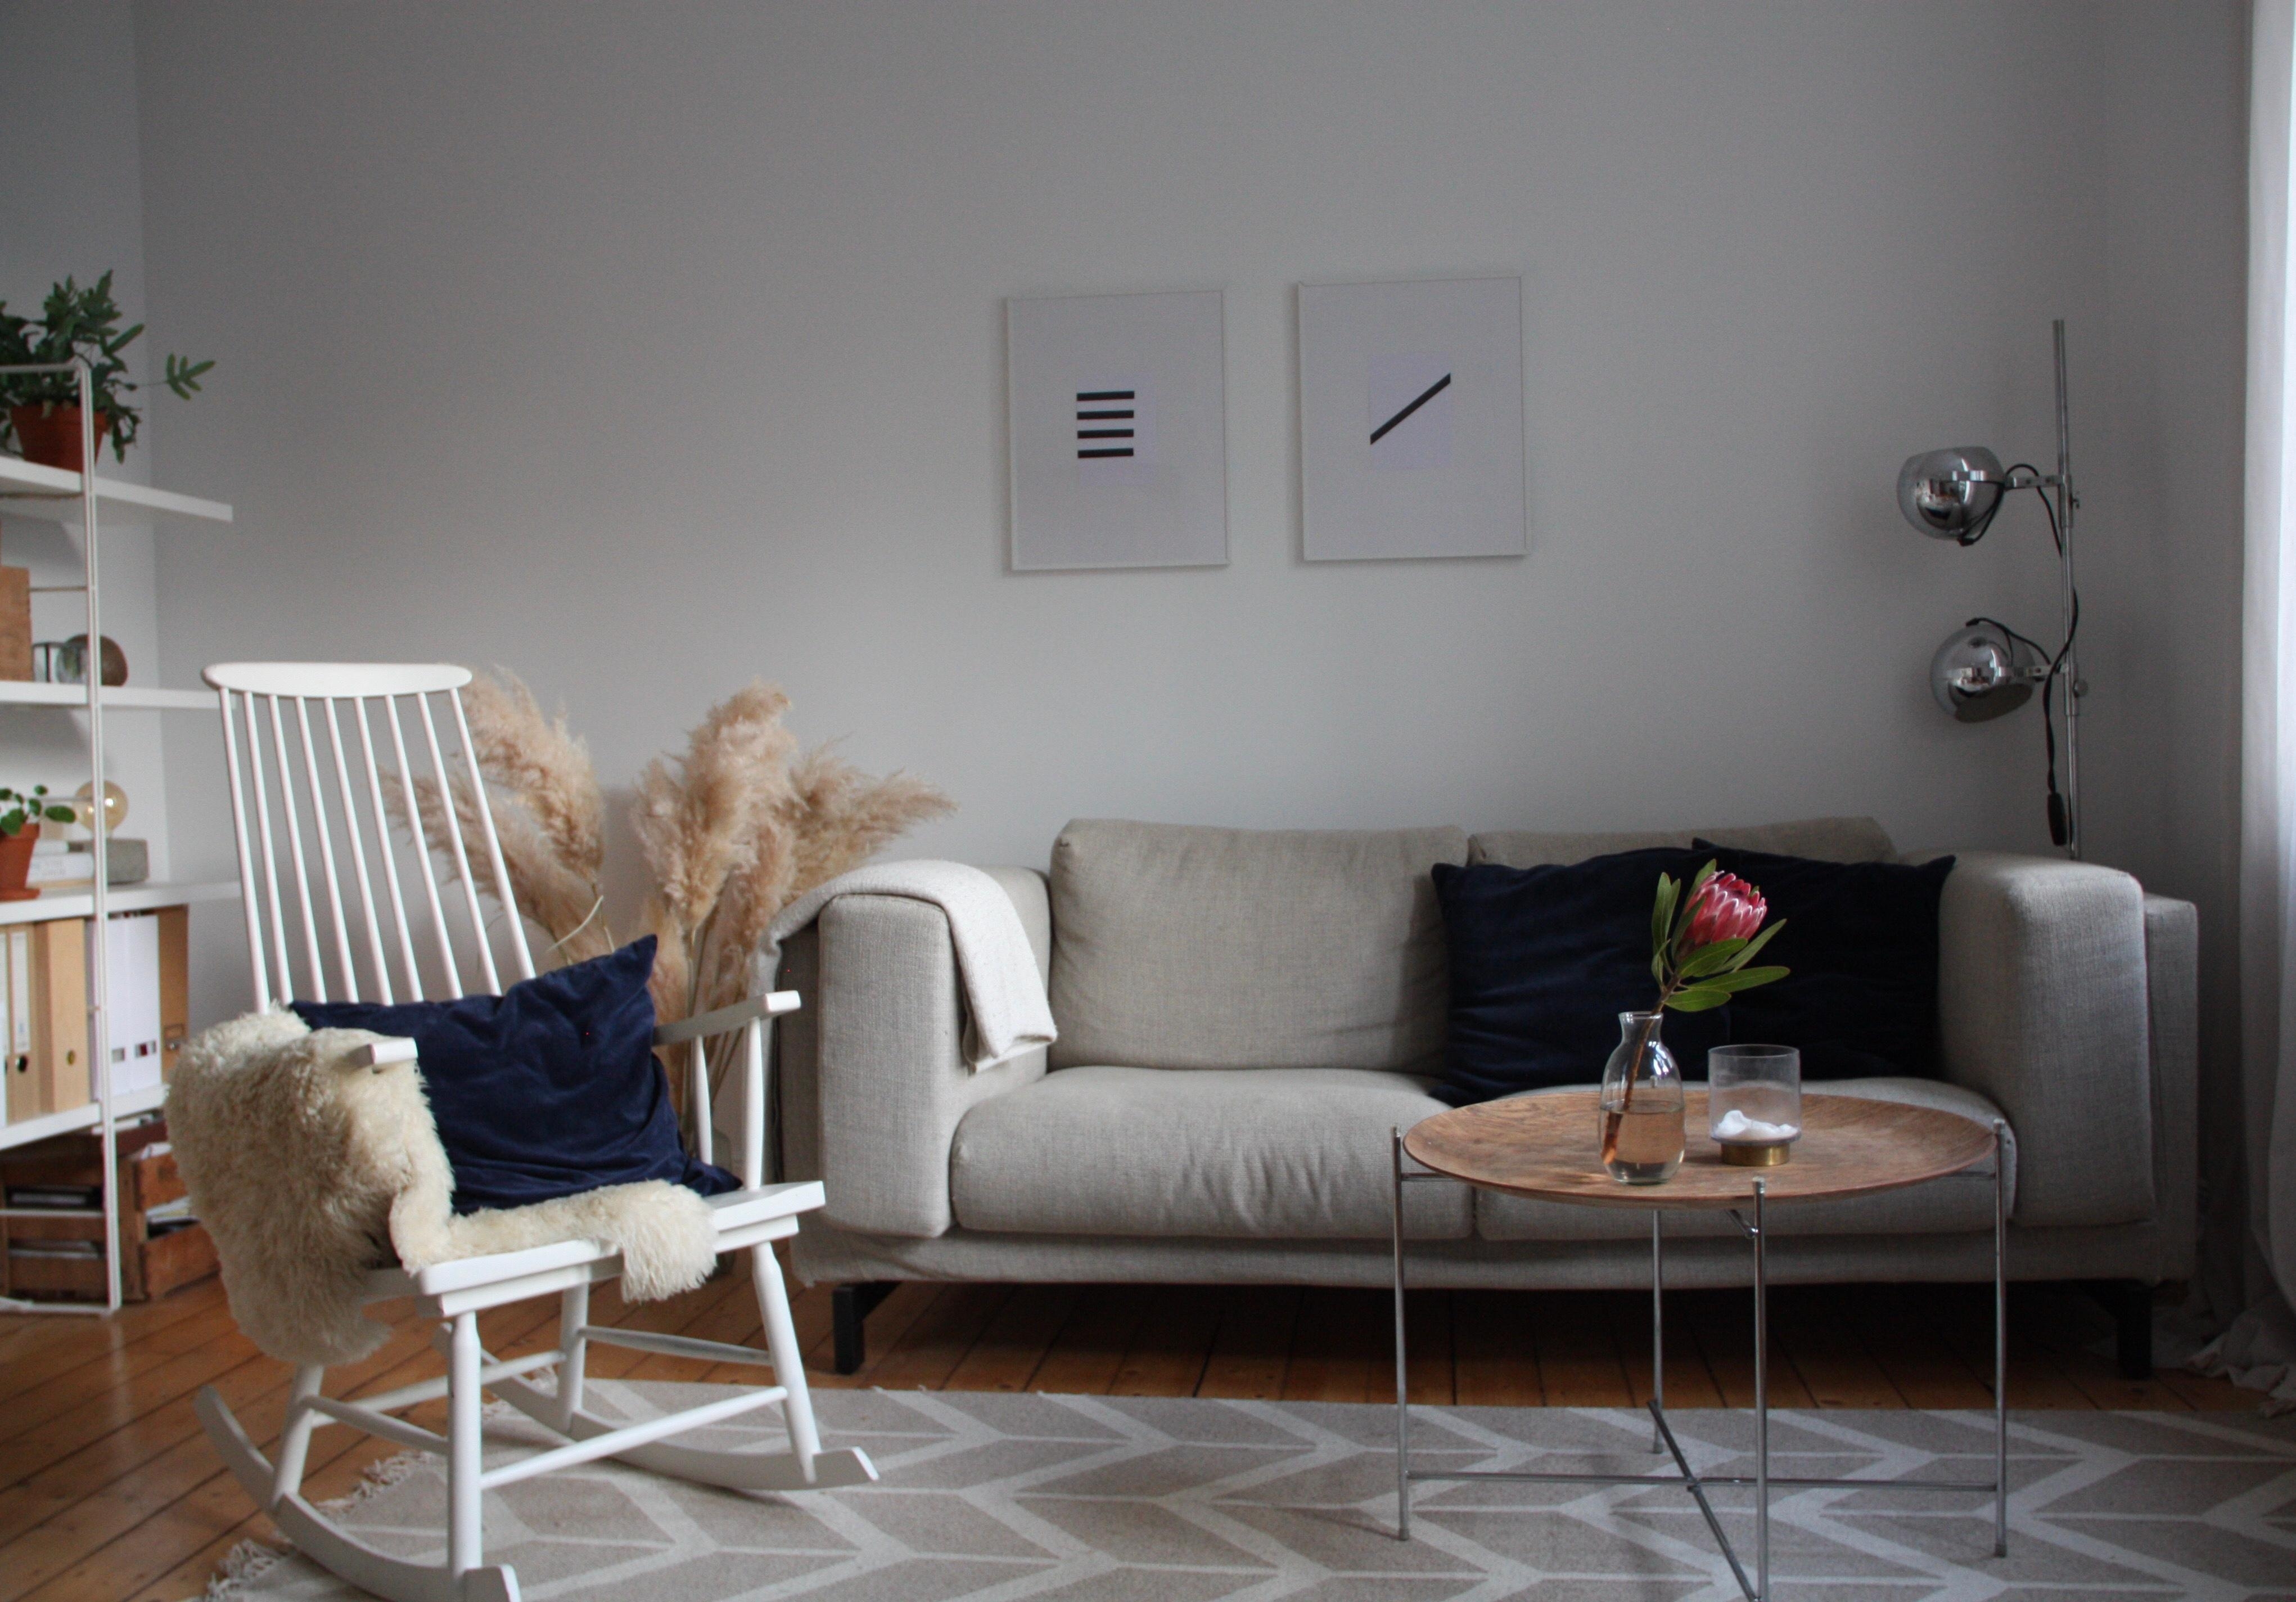 Cozy Lieblingsplatz.
#livingroom #skandinavischwohnen